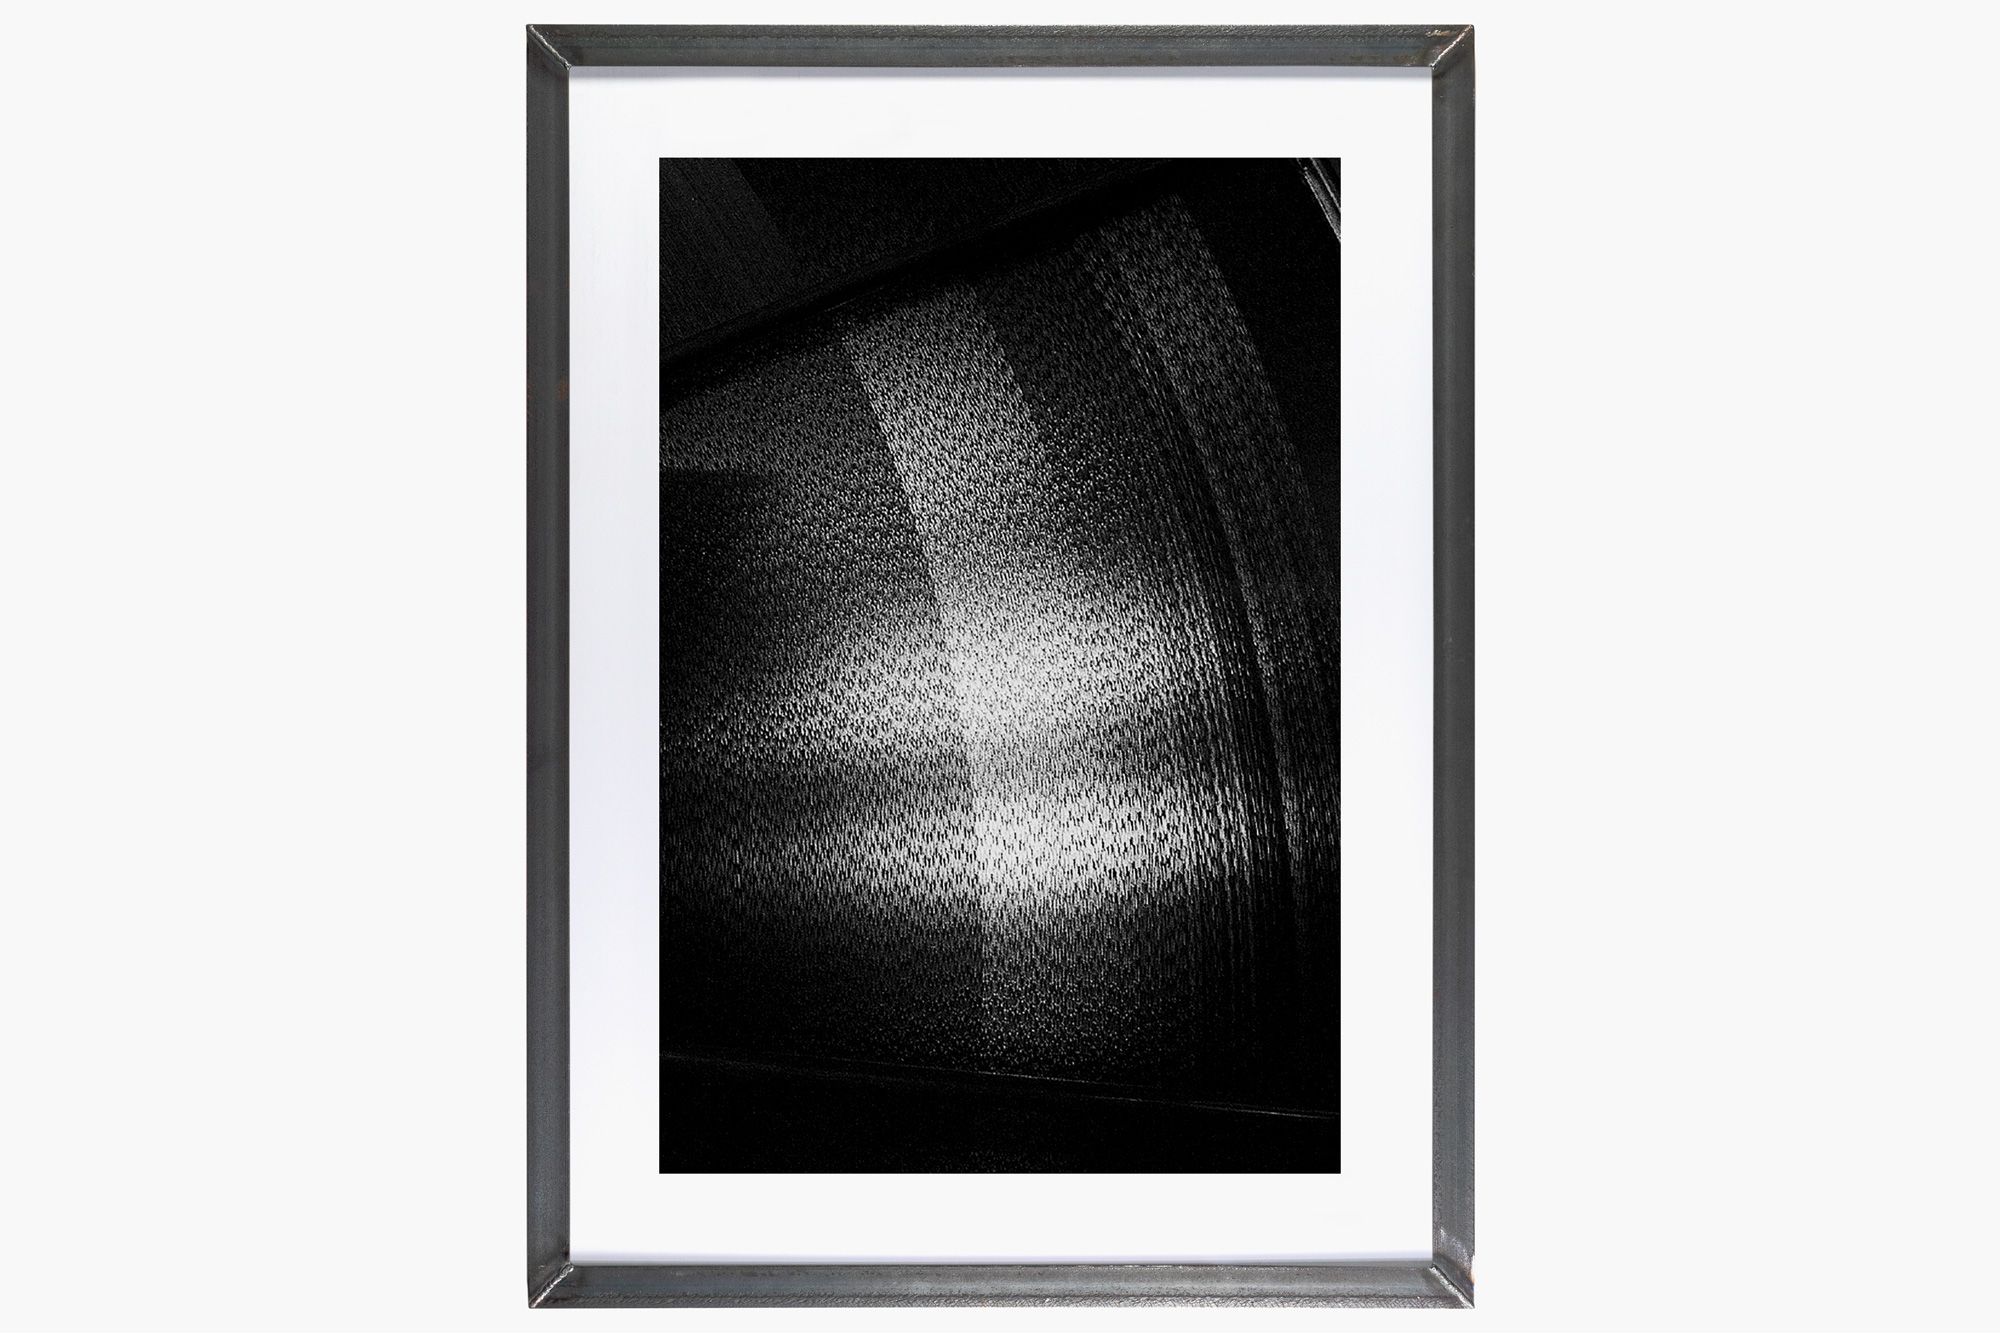 Stephan Machac xenon 2010 Polyesterfilm (Xenon#9) - 2010 - inkjet print - untreated steel frame - 91 x 67 cm